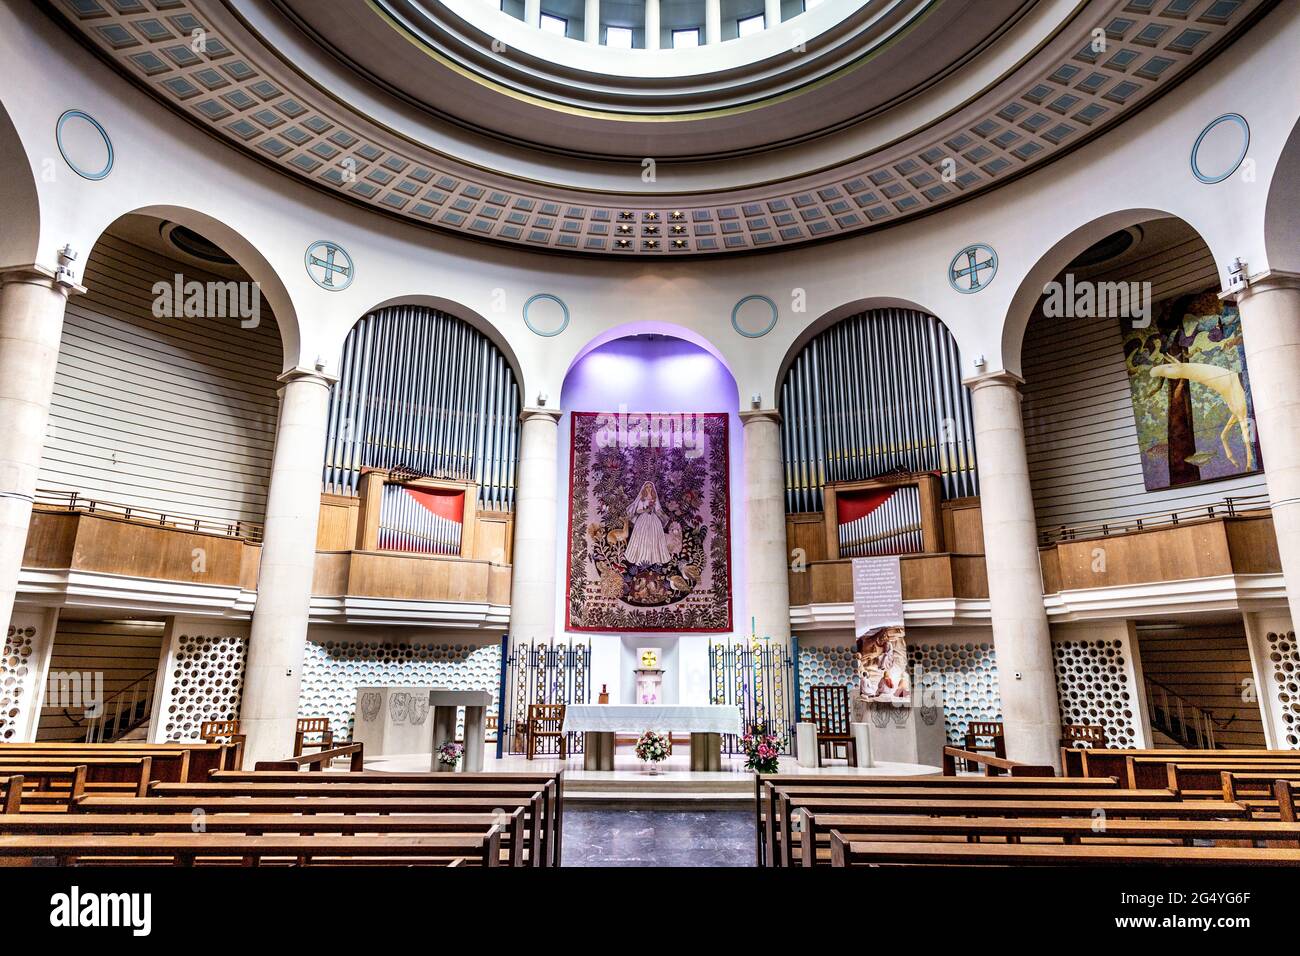 Altar von Notre Dame de France mit Aubusson-Wandteppich von Dom Robert, Leicester Square, London, Großbritannien Stockfoto